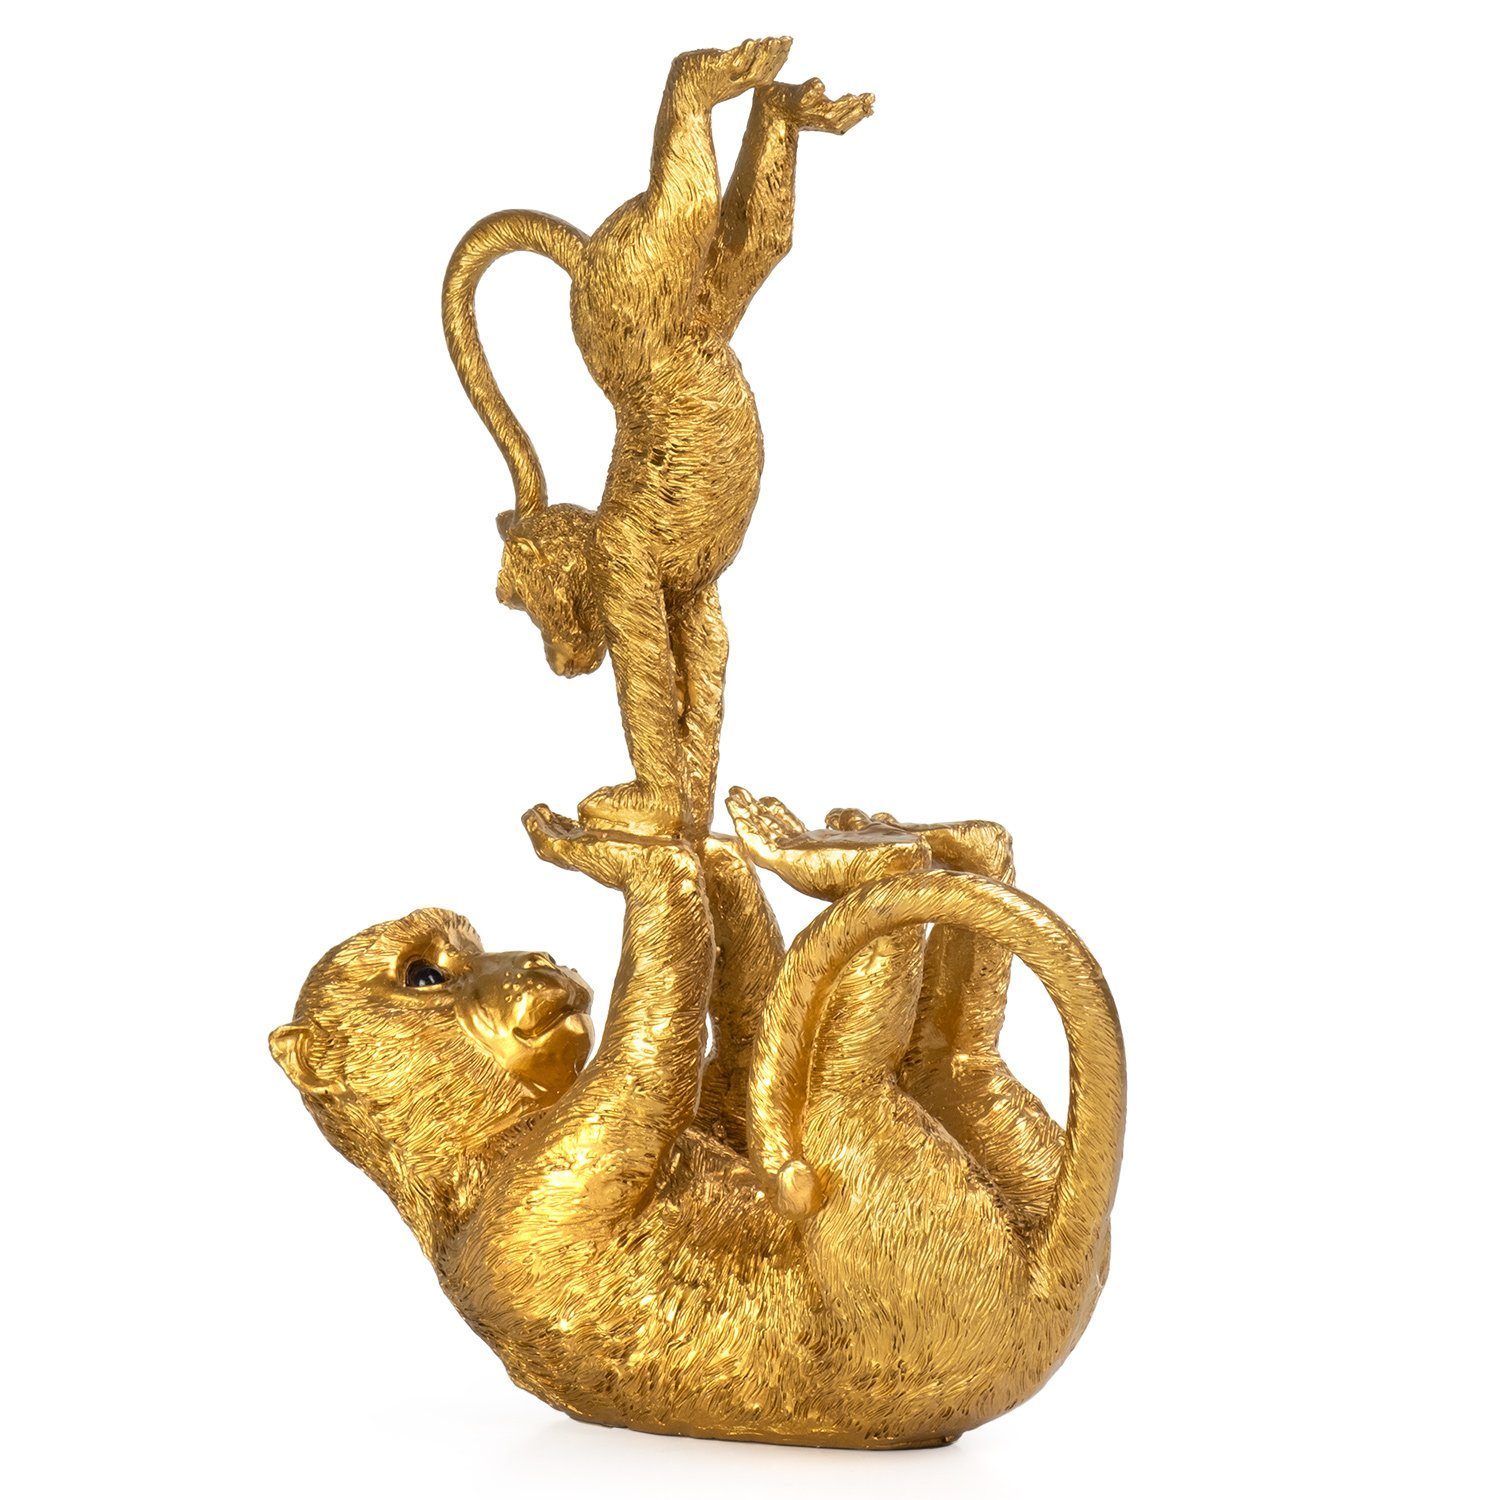 Moritz Dekofigur Deko-Figur Affen-Yoga Mutter spielt mit Kind aus Polyresin gold, Dekofigur aus Polyresin Dekoelement Dekoration Figuren